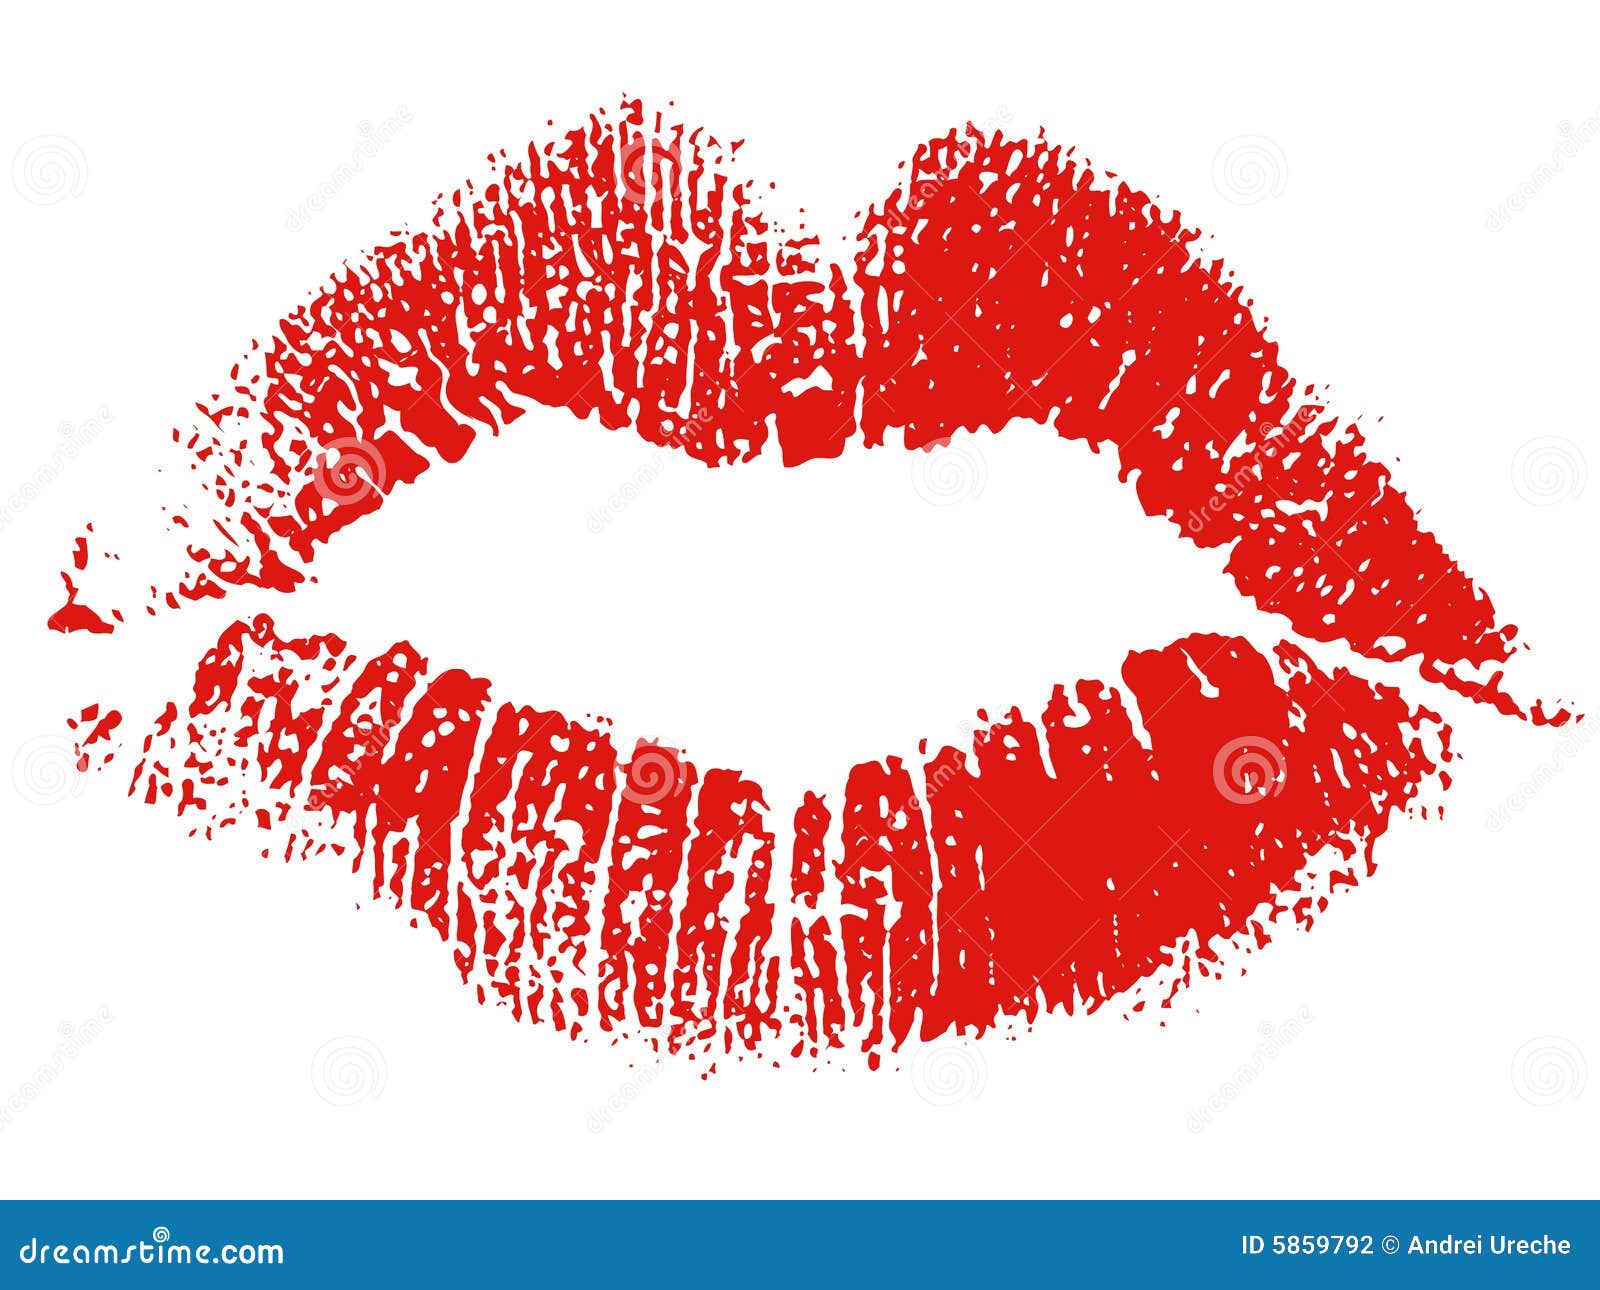 clipart lipstick kiss - photo #39